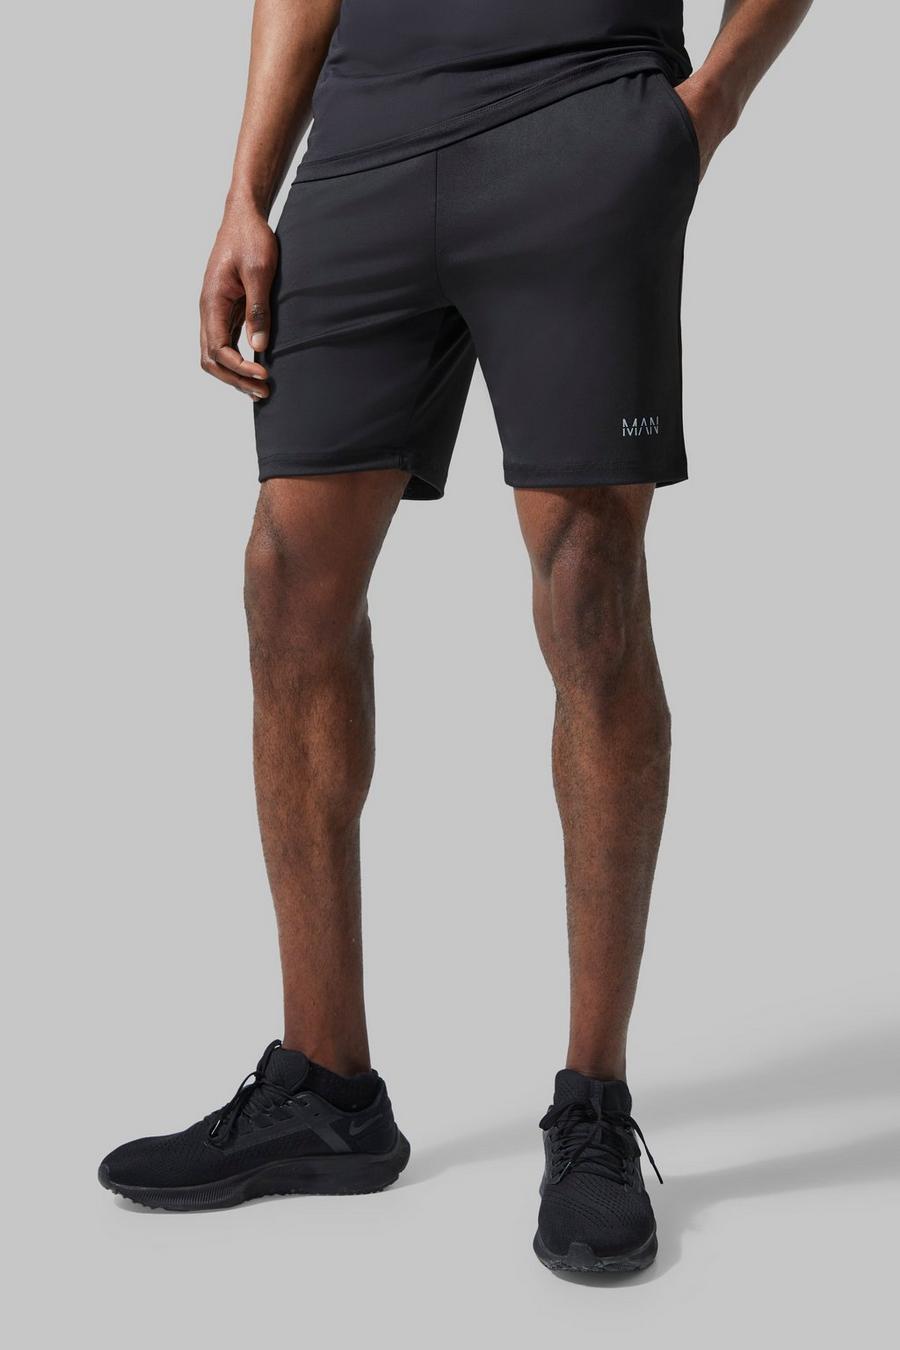 Pantalón corto MAN Active deportivo resistente, Black negro